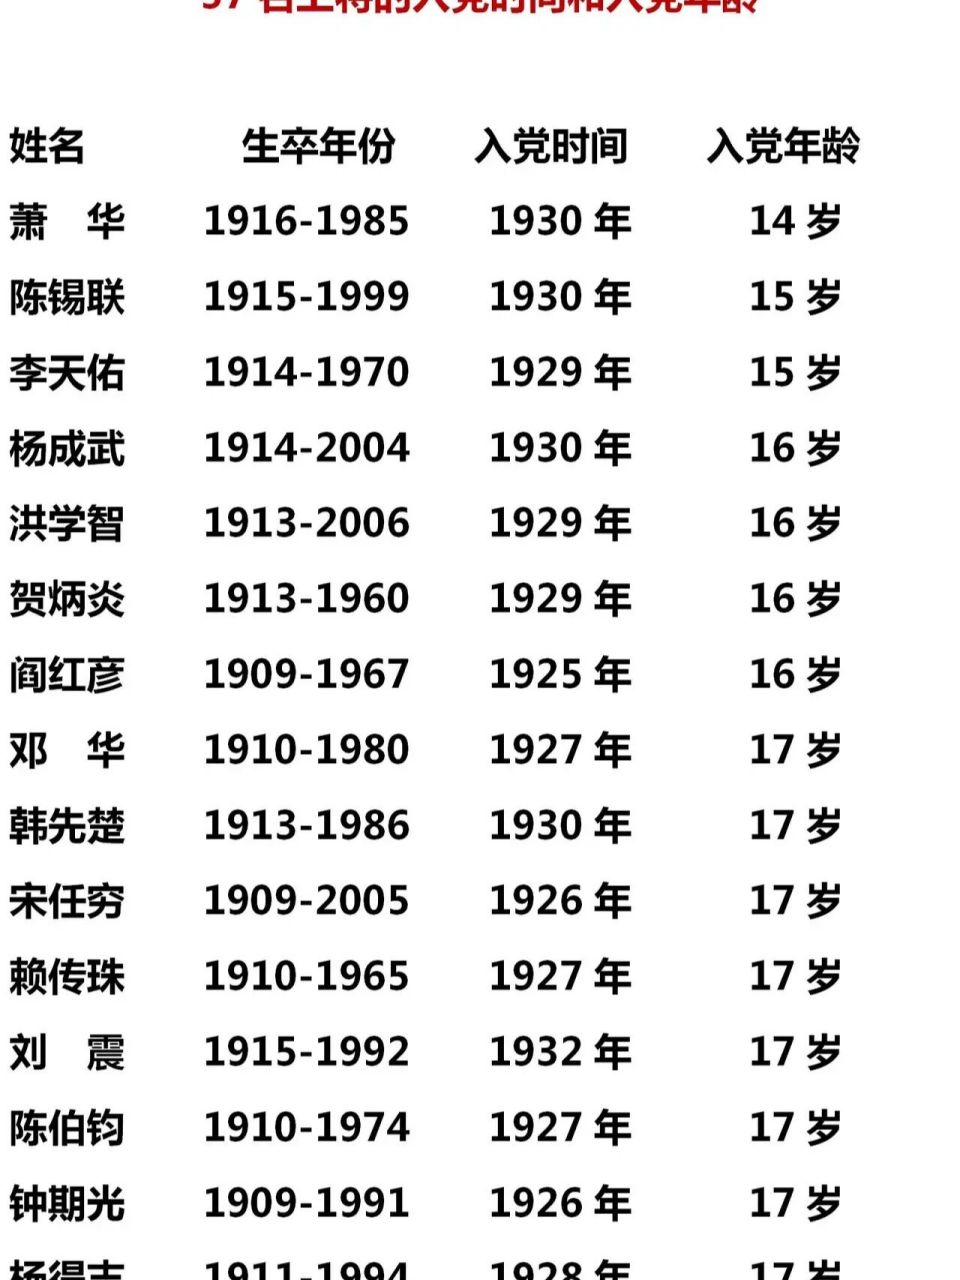 中国伟人身高一览表图片